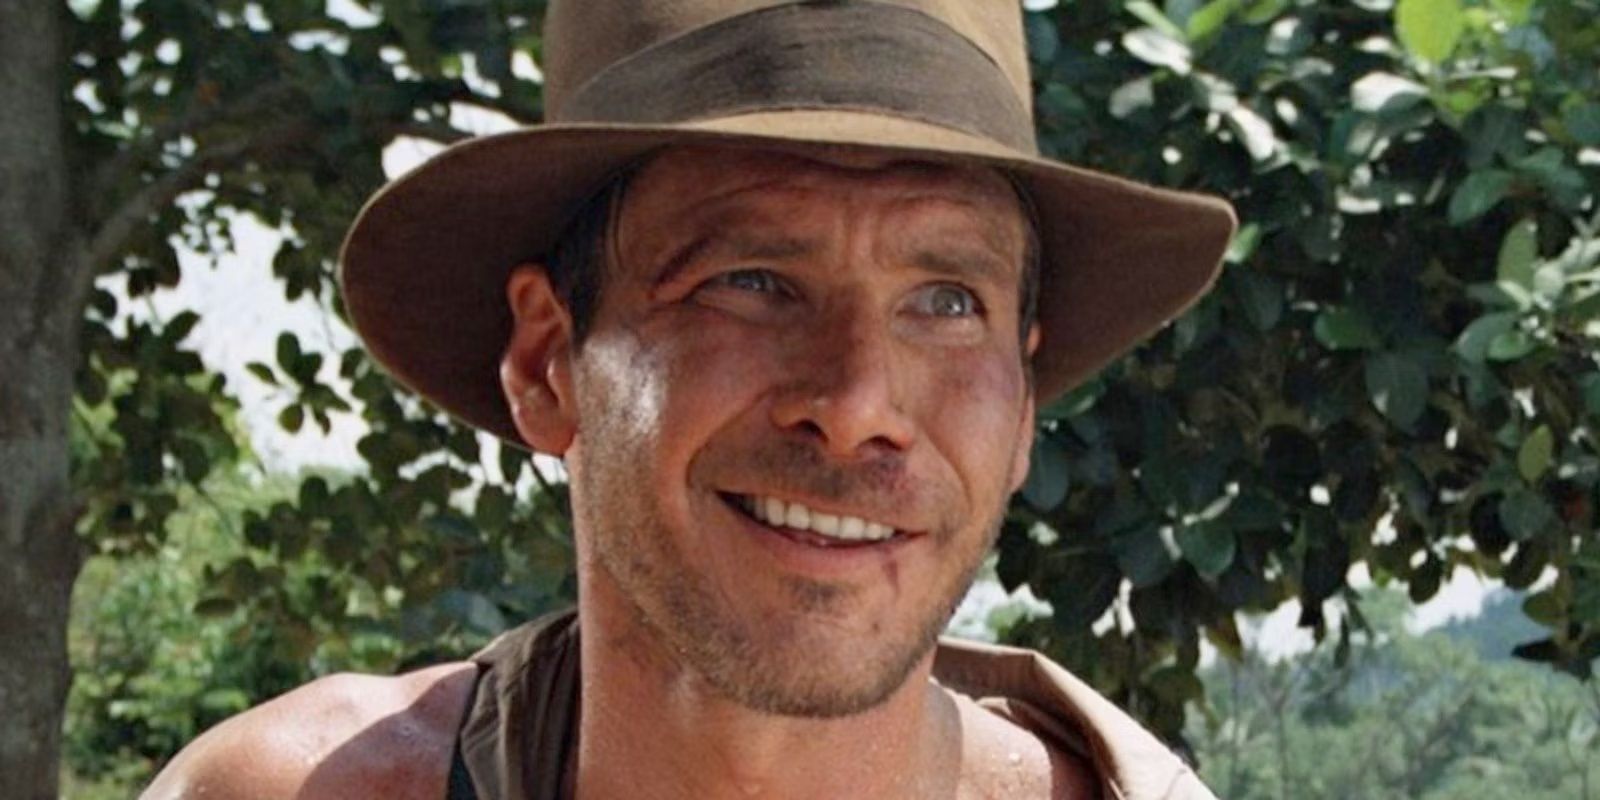 Indiana Jones smiling in the woods.